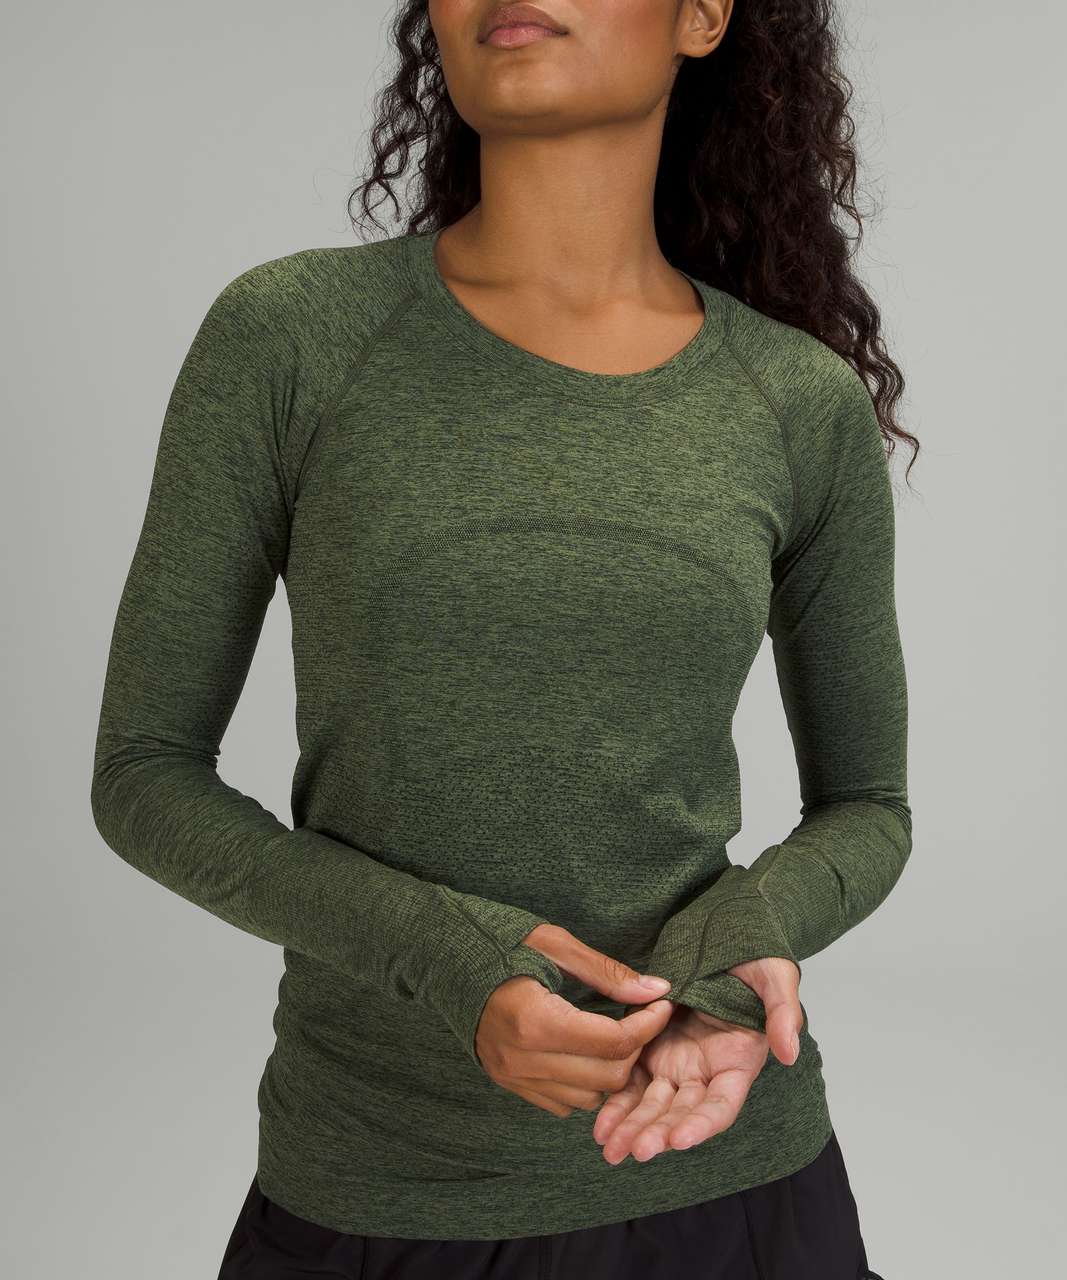 Lululemon Swiftly Tech Long Sleeve Shirt 2.0 - Rainforest Green / Green Twill